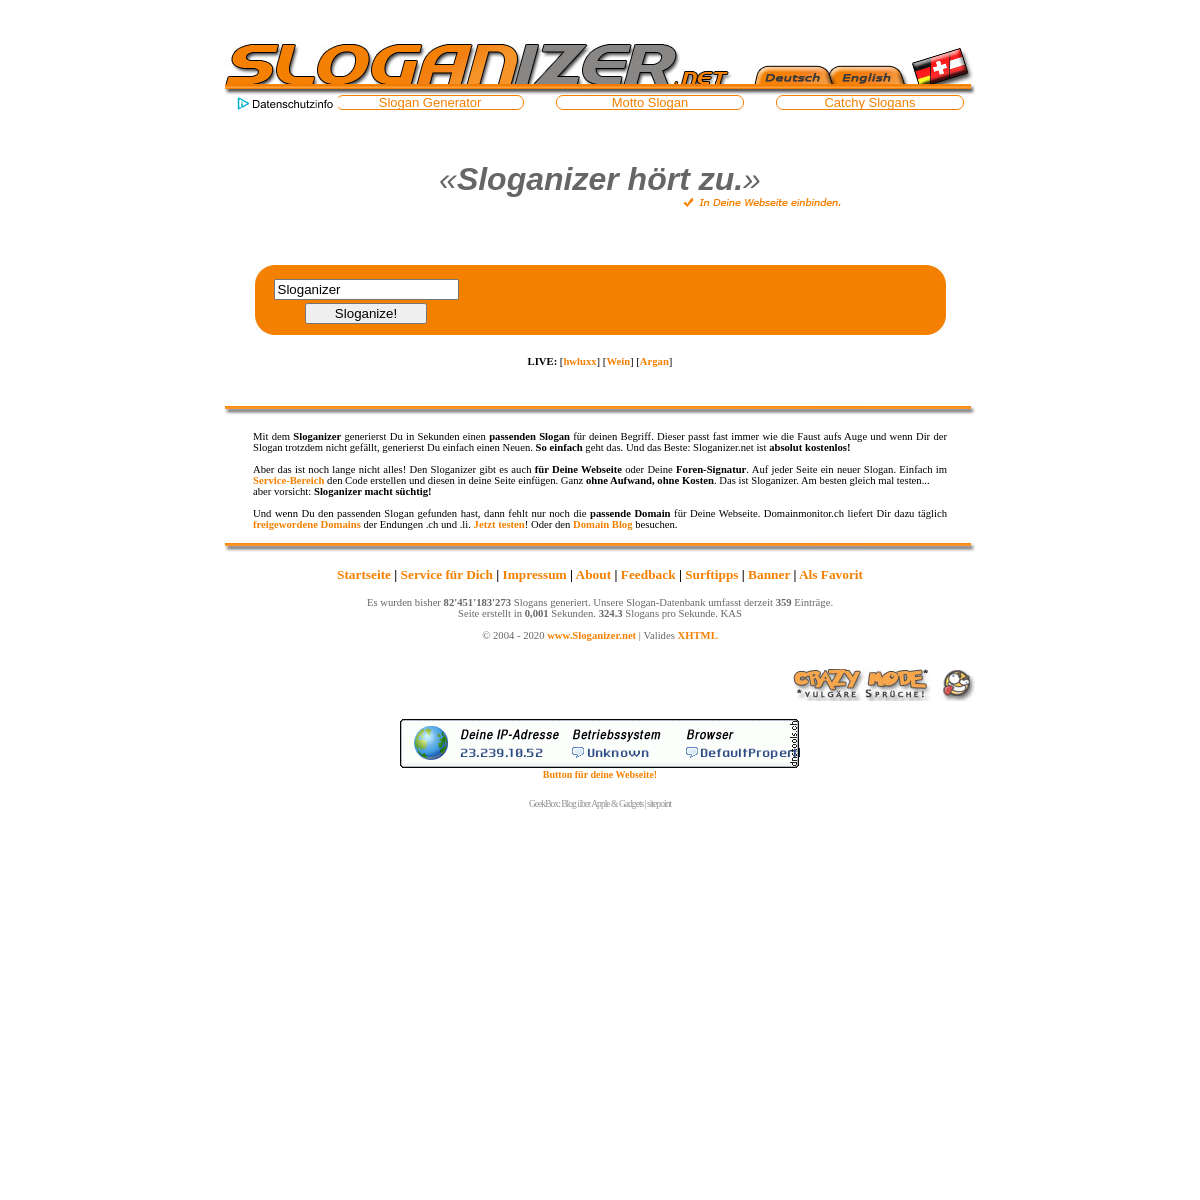 Sloganizer.net - Instant Slogans mit dem Slogan Generator.